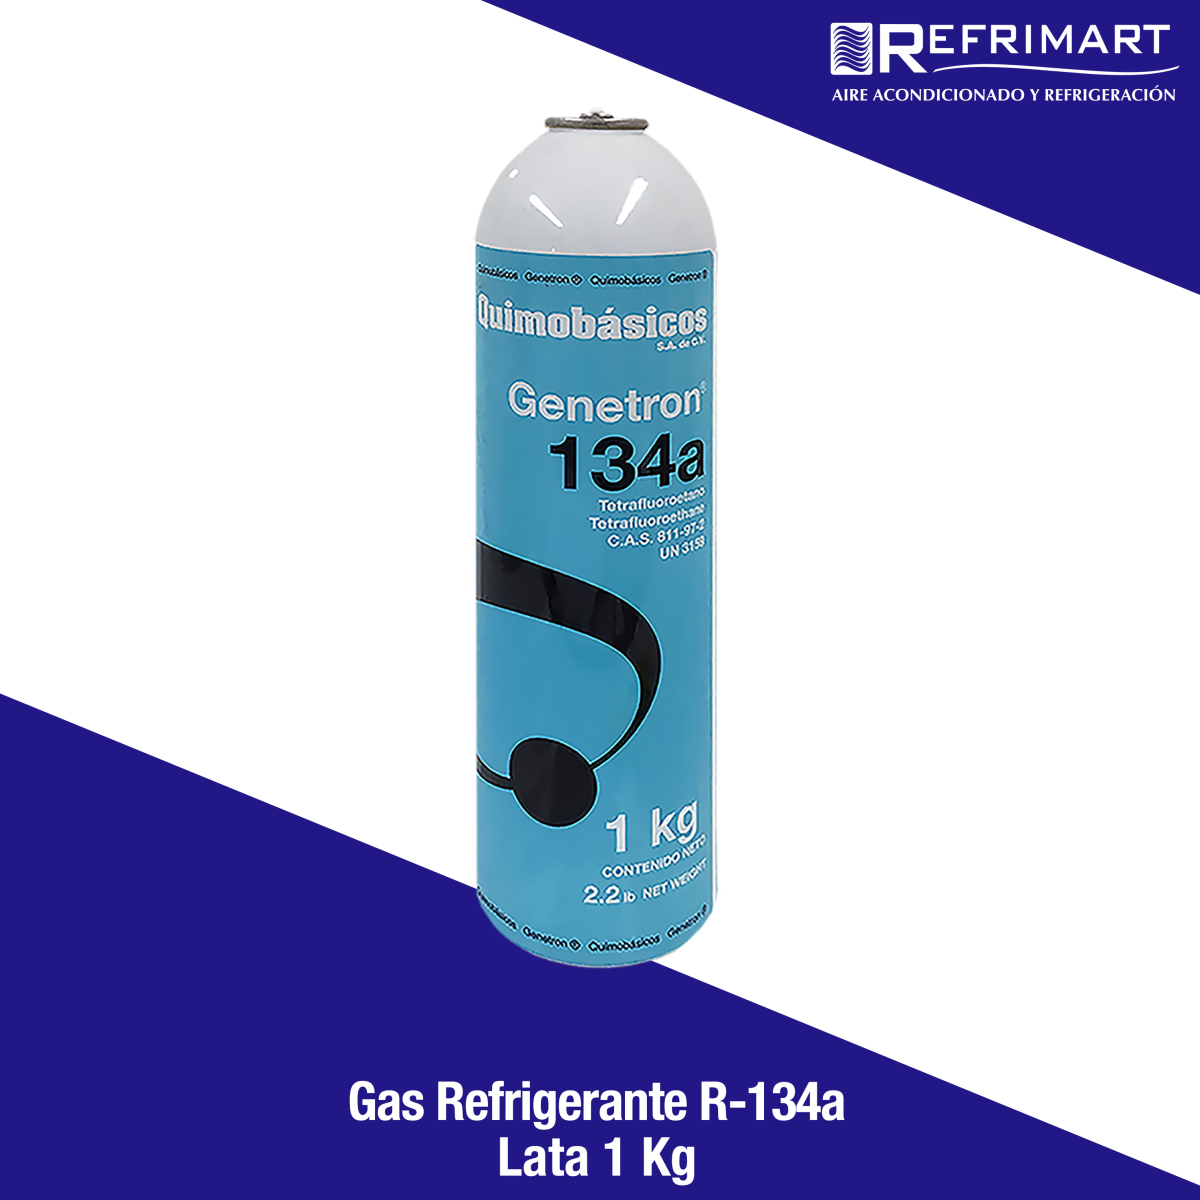 Gas Refrigerante R134a - 1Kg. - Refrimart de México S.A de C.V. - Acondicionado y Refrigeración